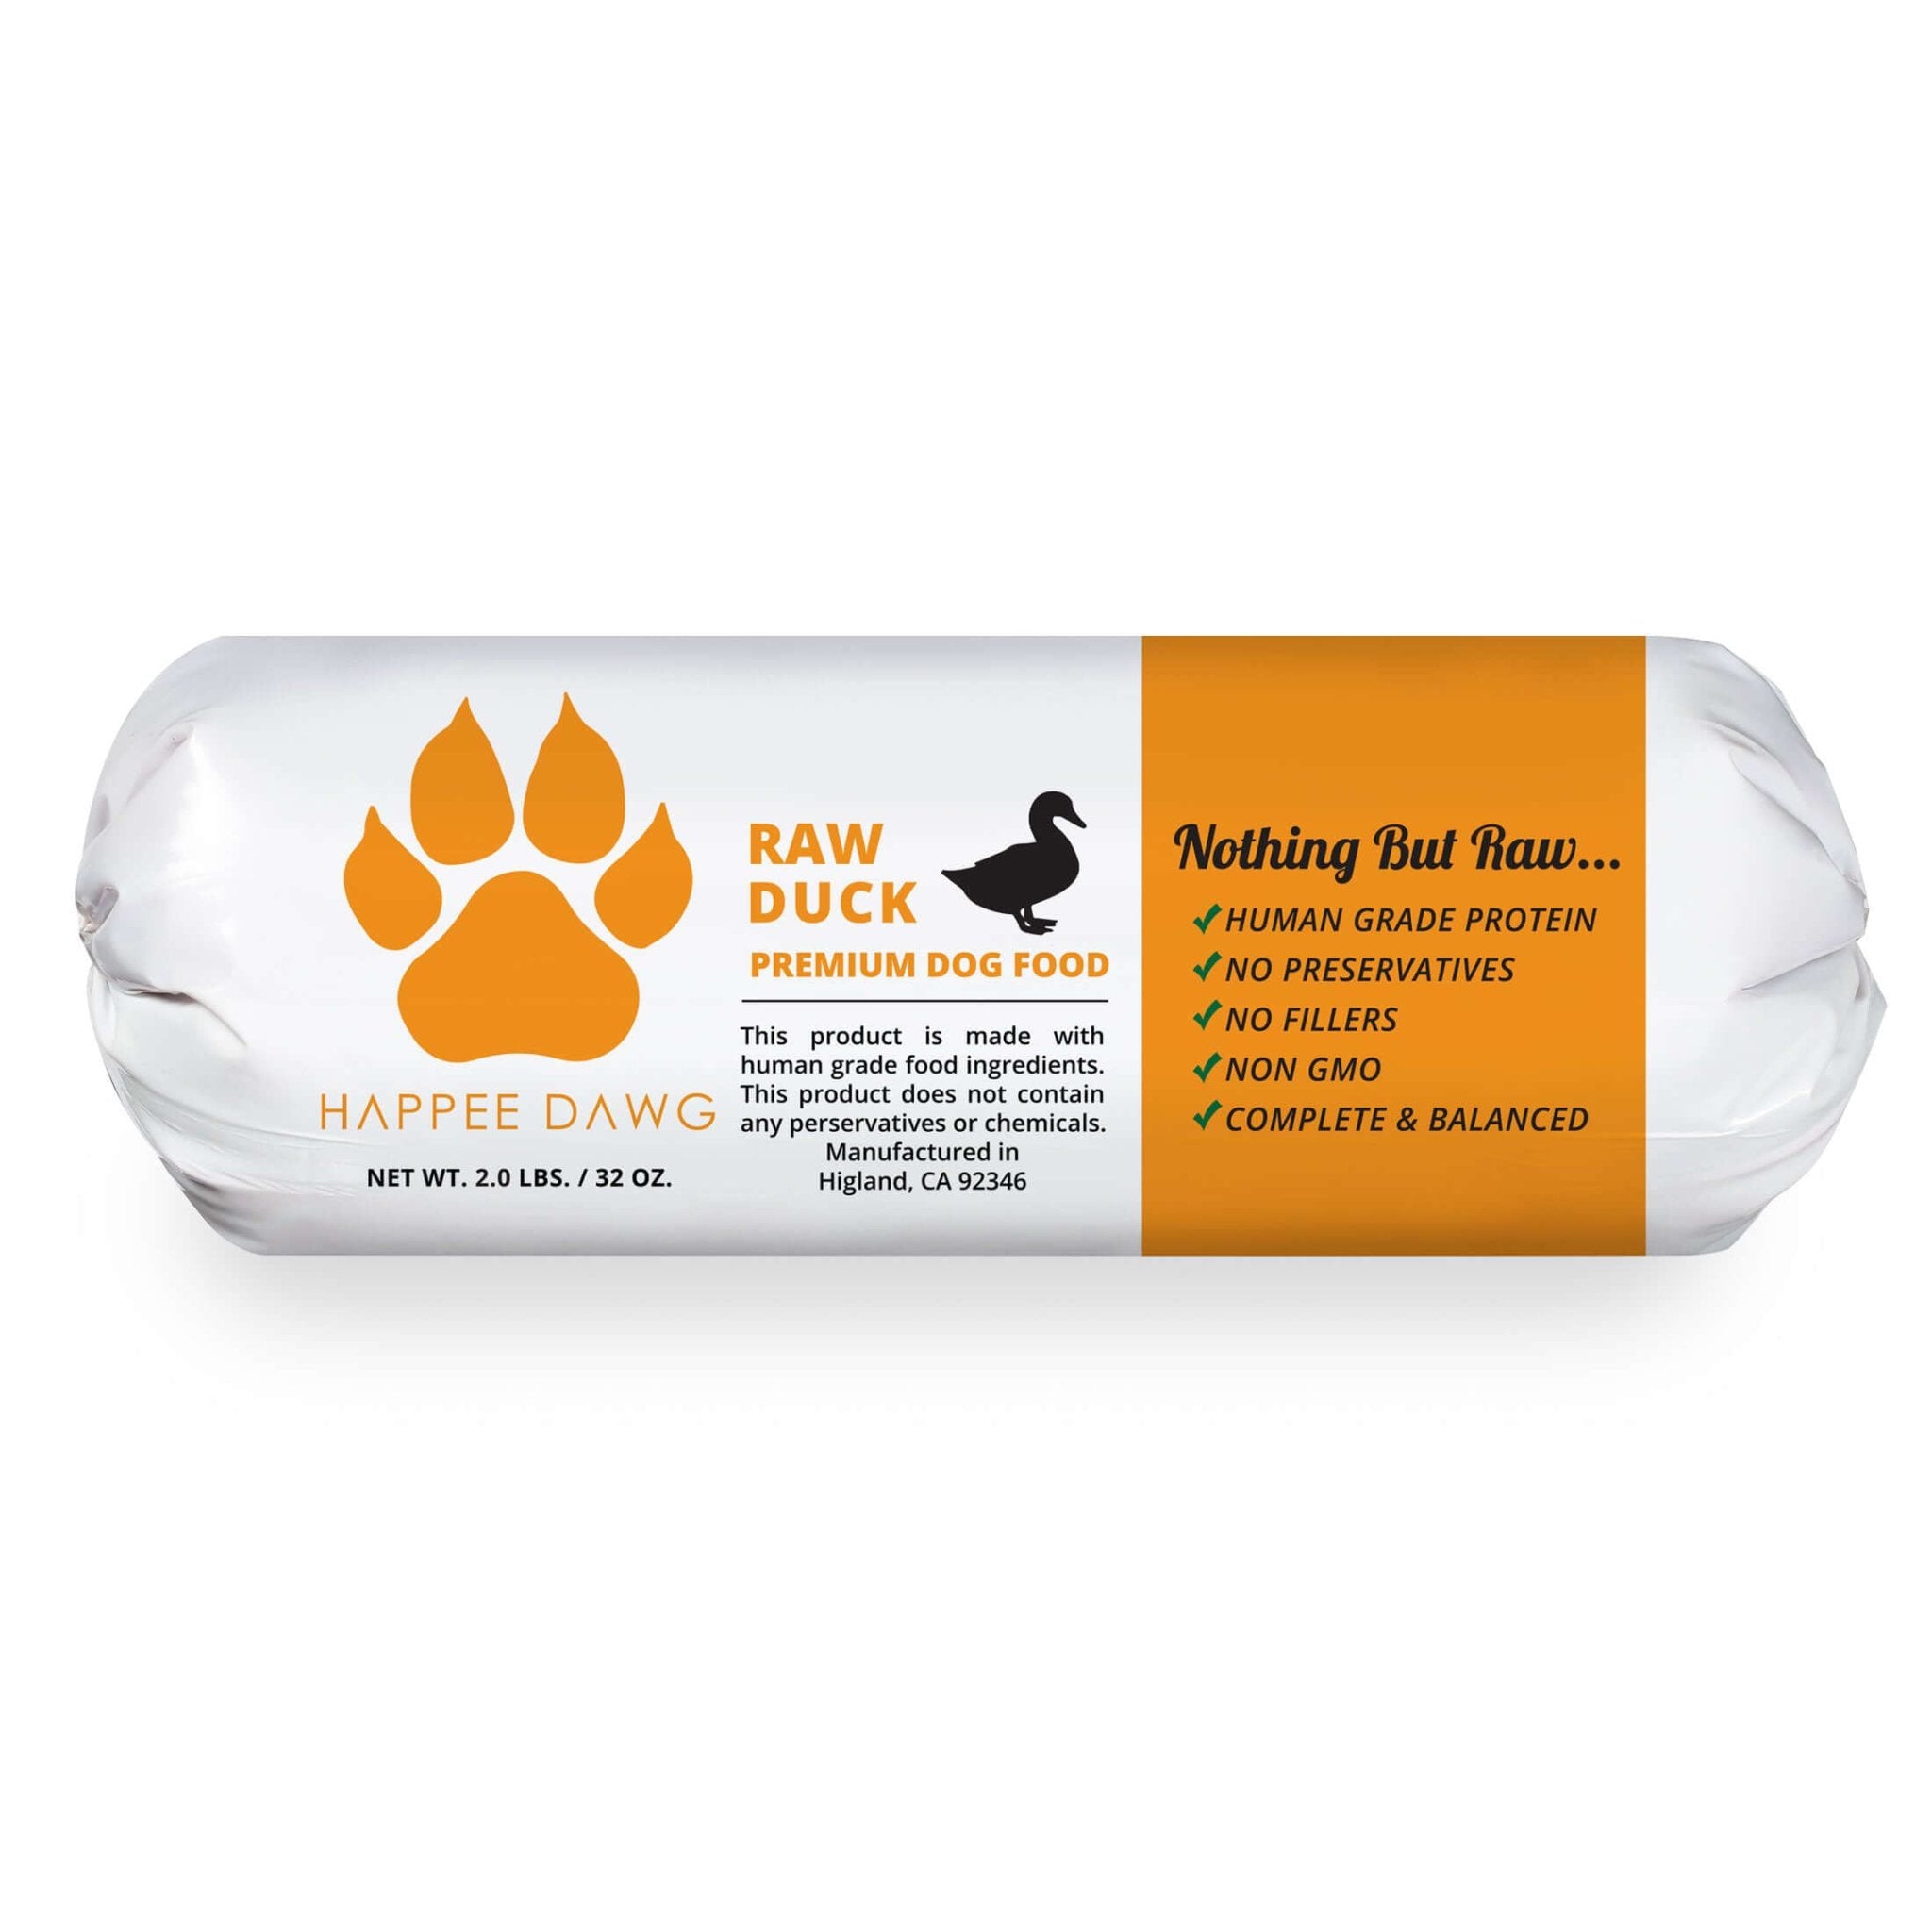 Antibiotic & Hormone Free Duck Blend 2lbs - Happee Dawg